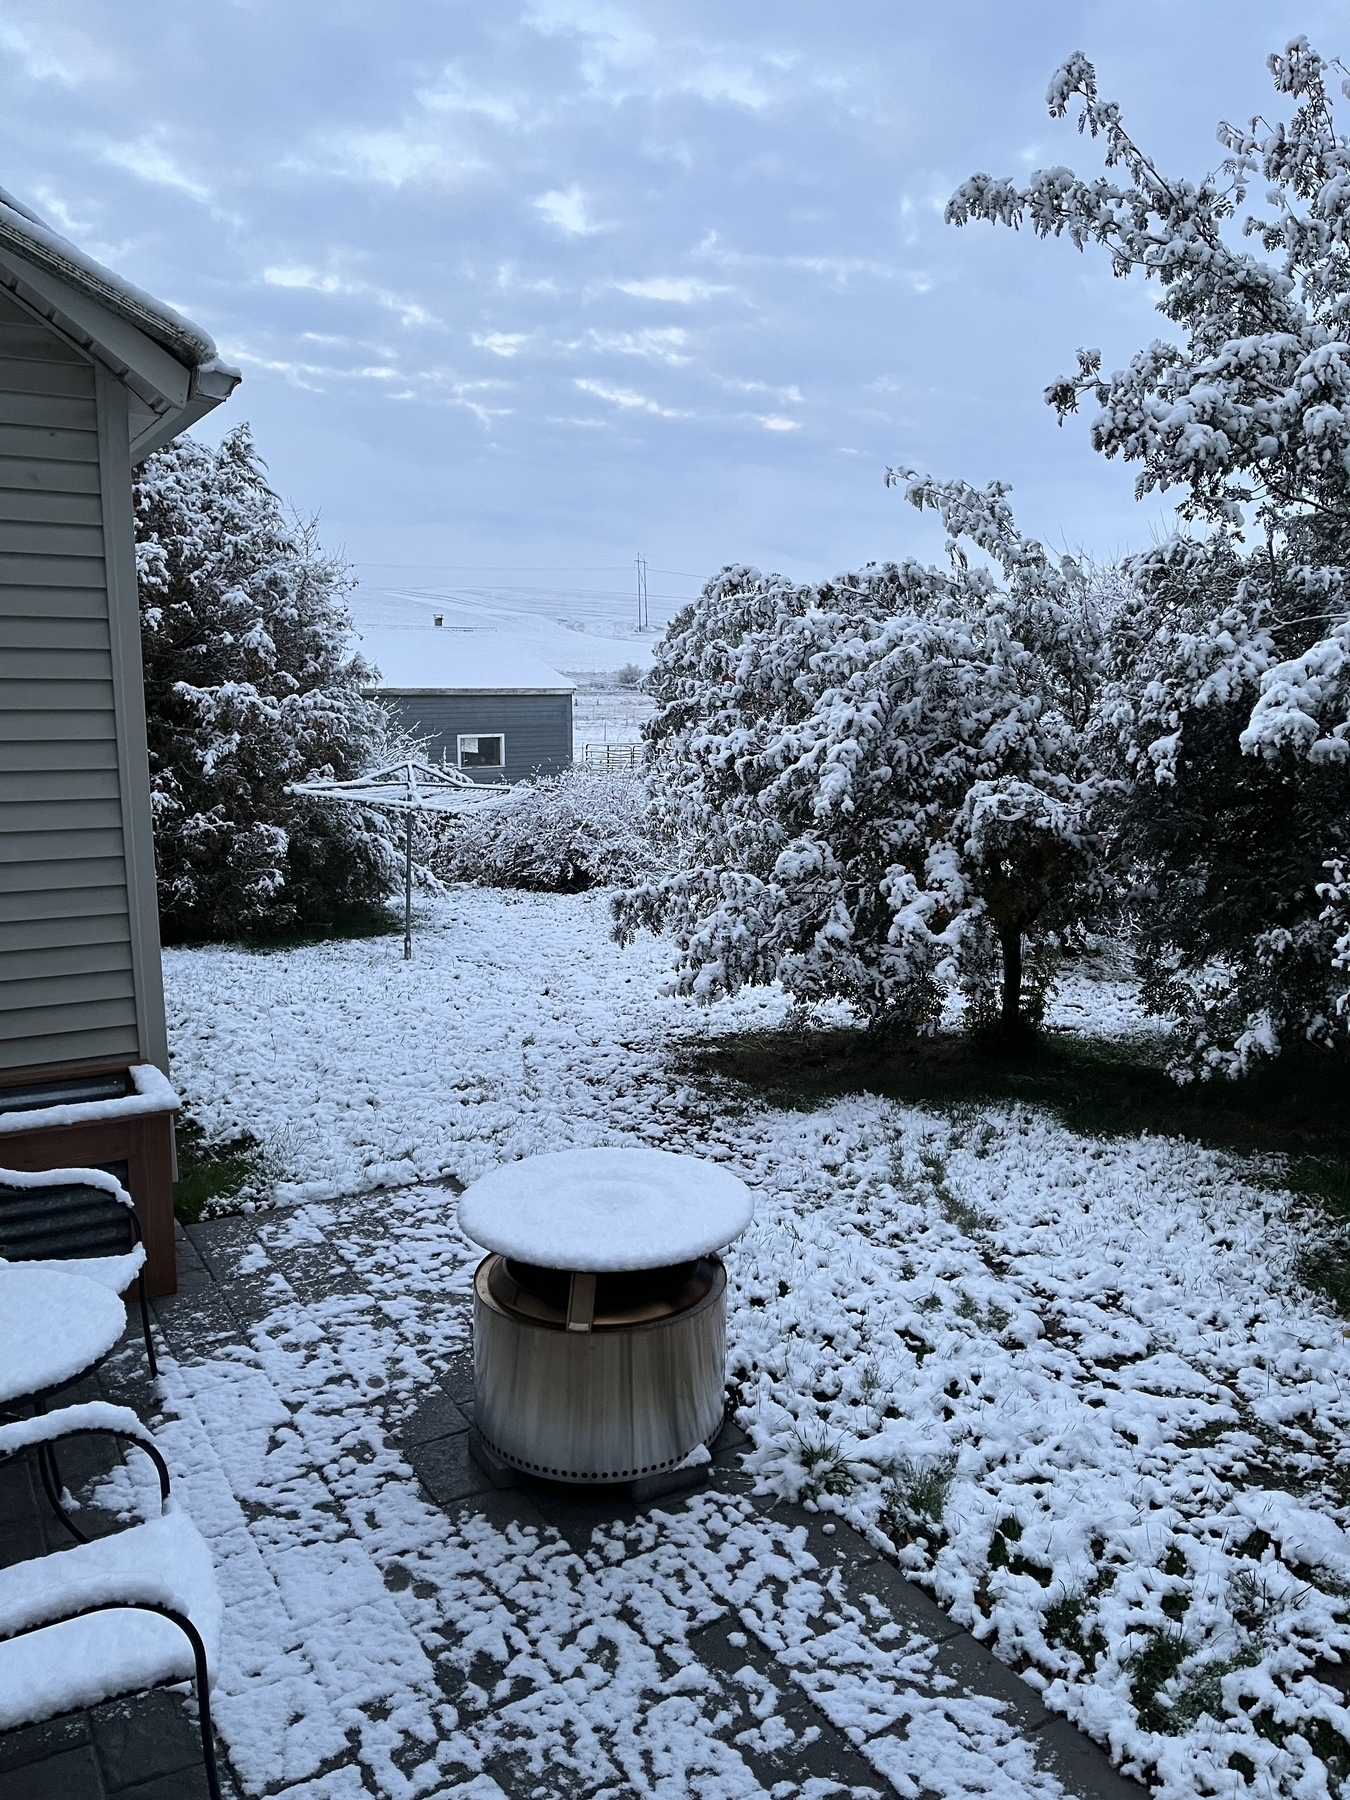 Snowy back yard